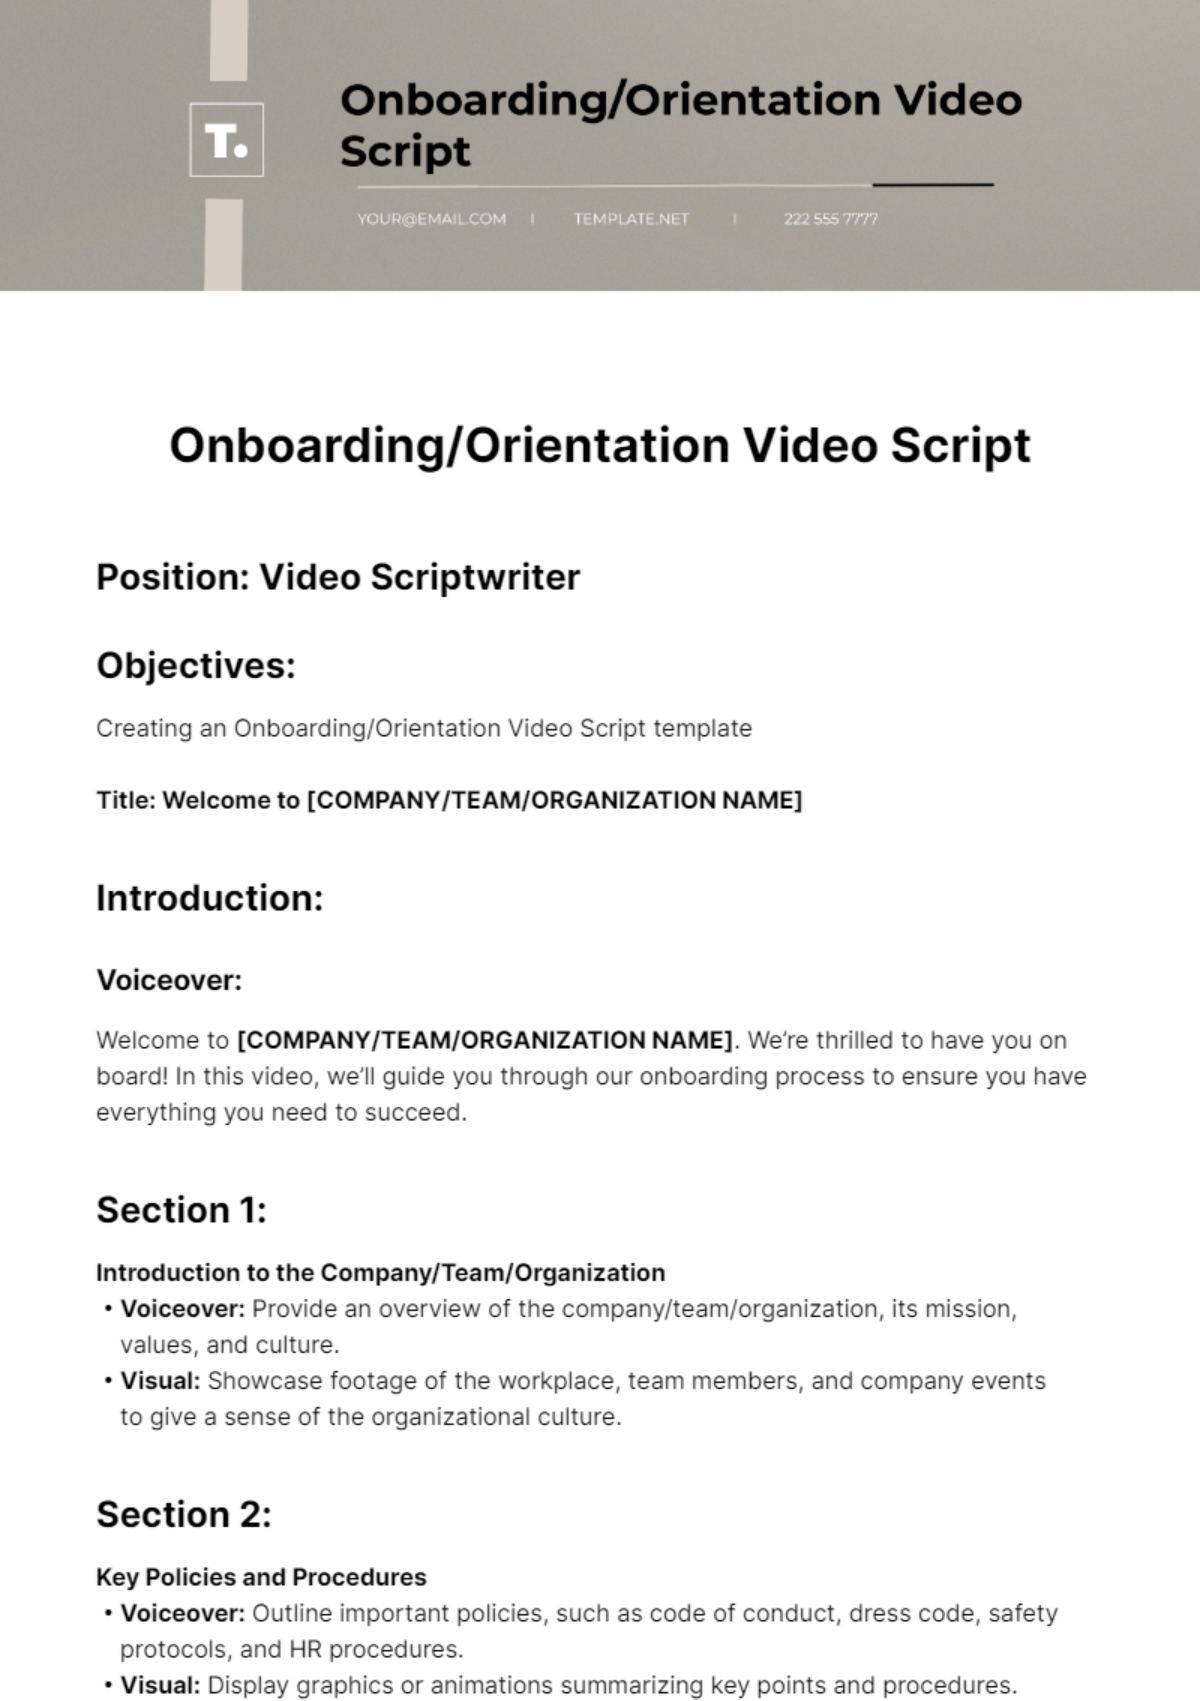 Onboarding/Orientation Video Script template